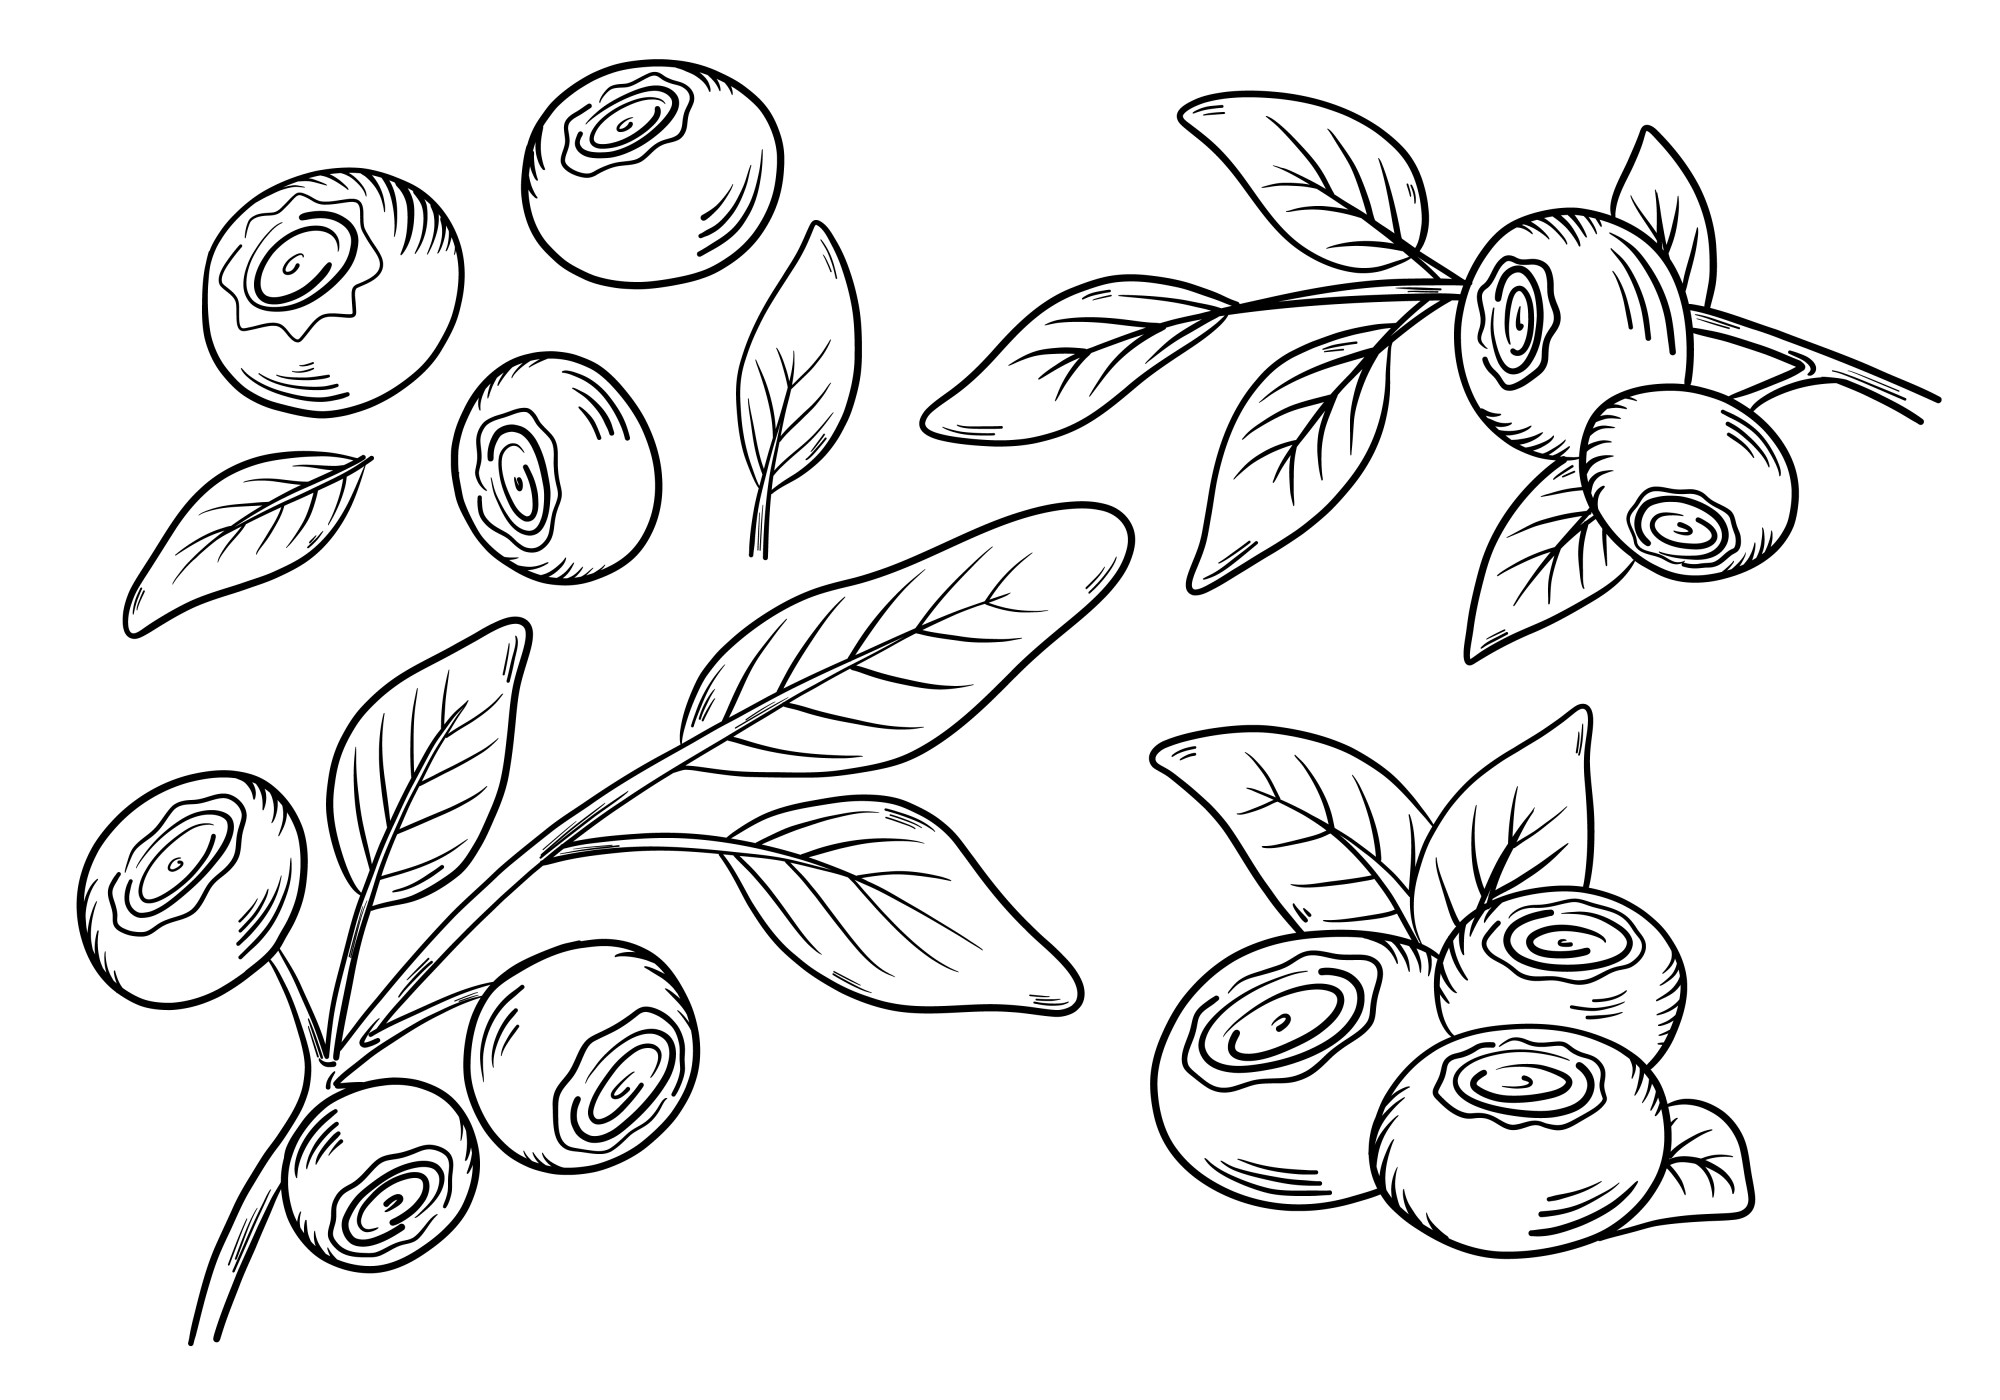 Раскраска для детей: ягоды черники с листьями